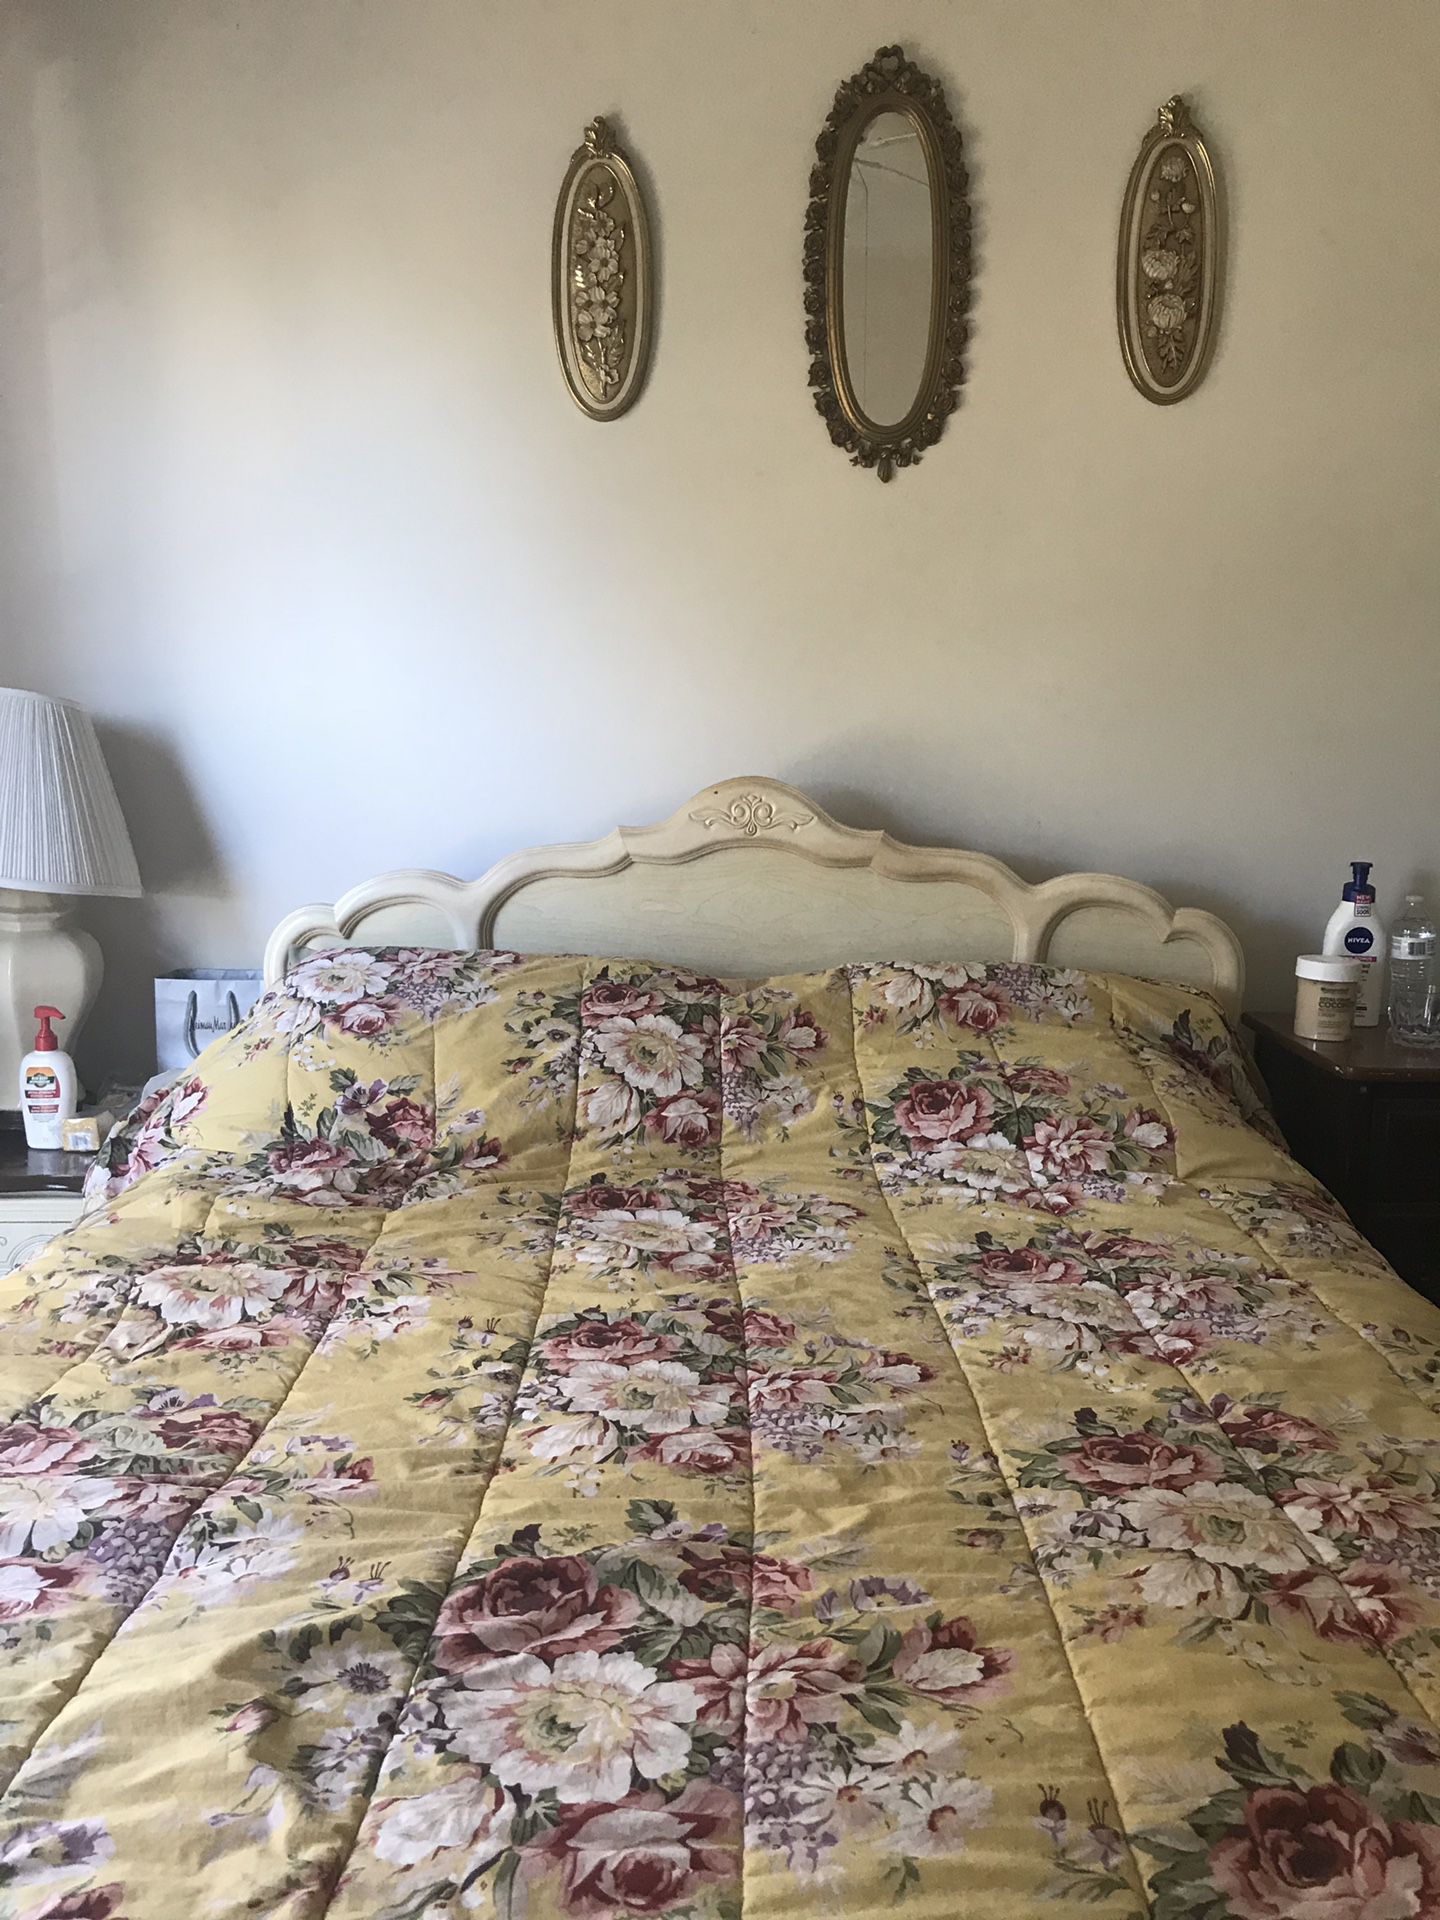 Victorian Queen bedroom set - with 1 nightstand, 1 dresser & mirror.